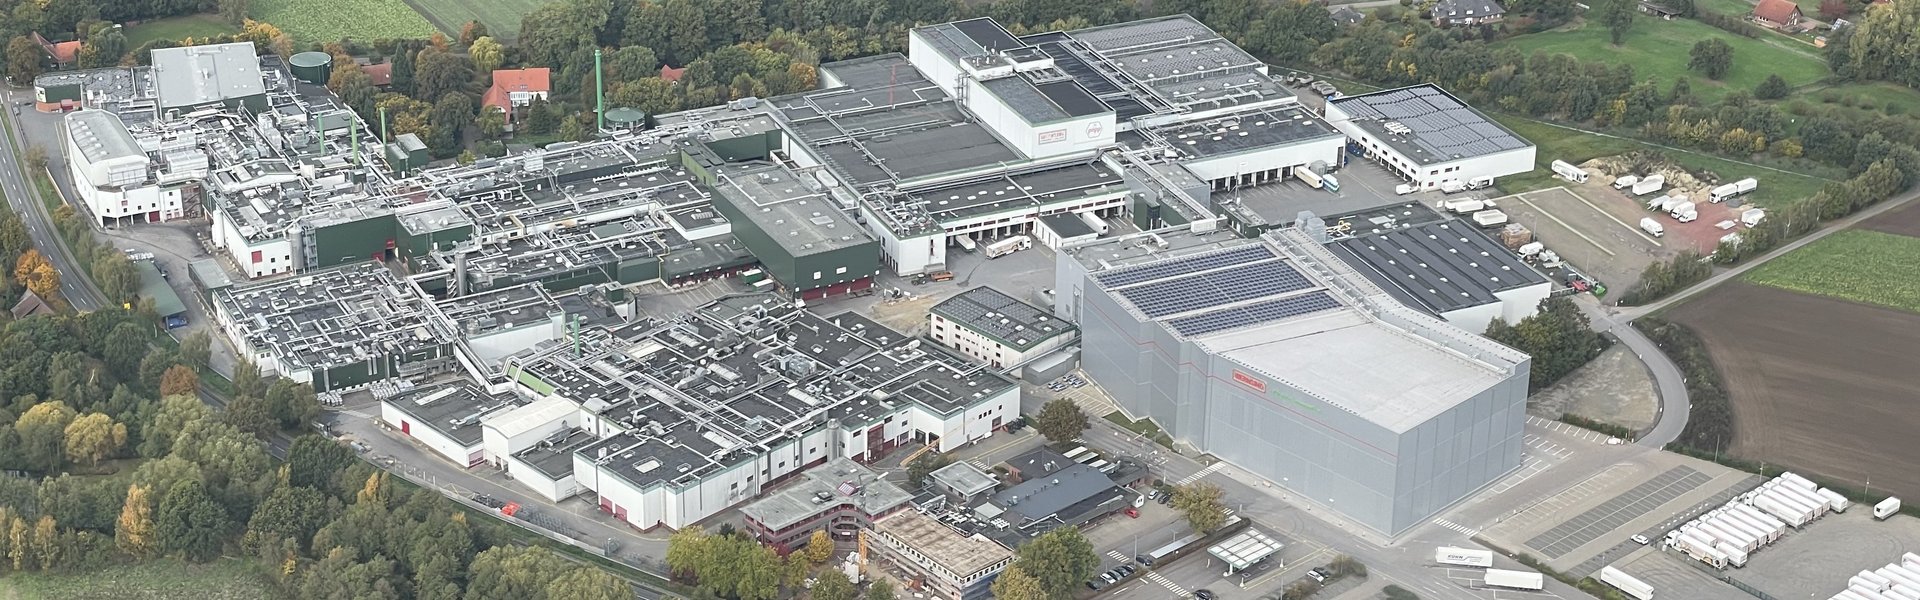 Luftbild des neuen automatischen Lagersystems der Wernsing Feinkost GmbH